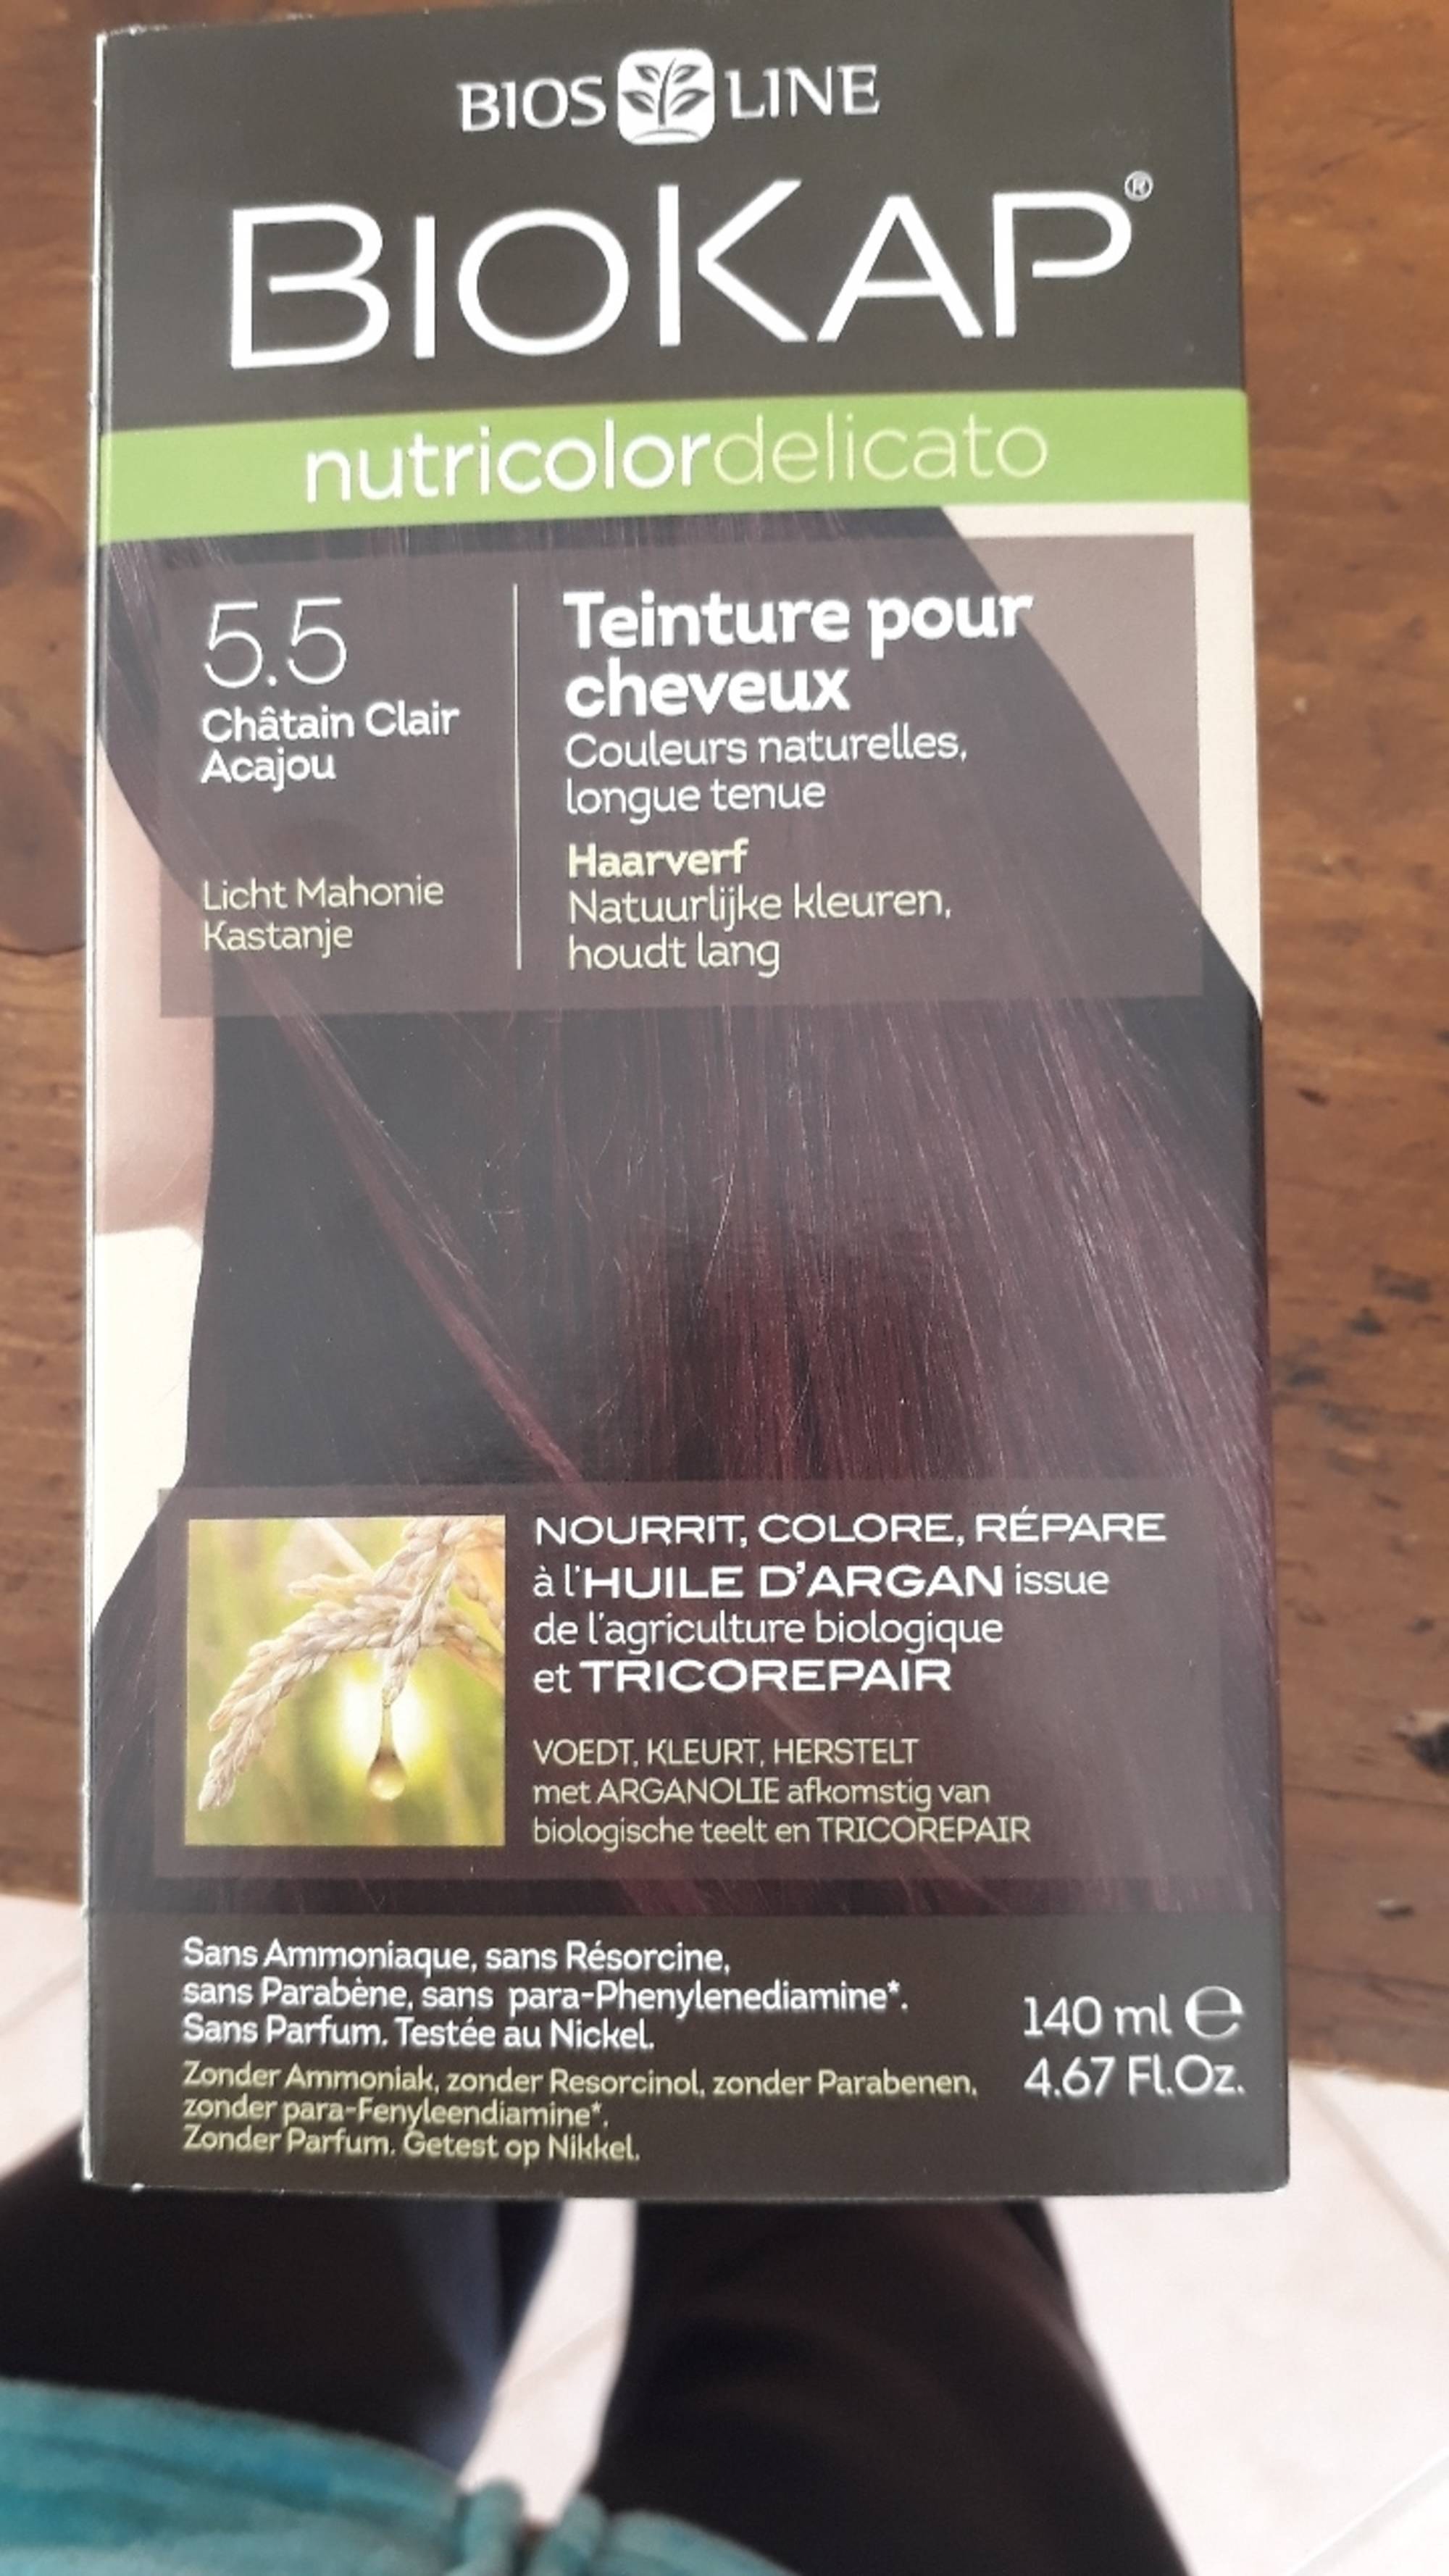 BIOKAP - Nutricolor delicato - Teinture pour cheveux 5.5 châtin clair acajou